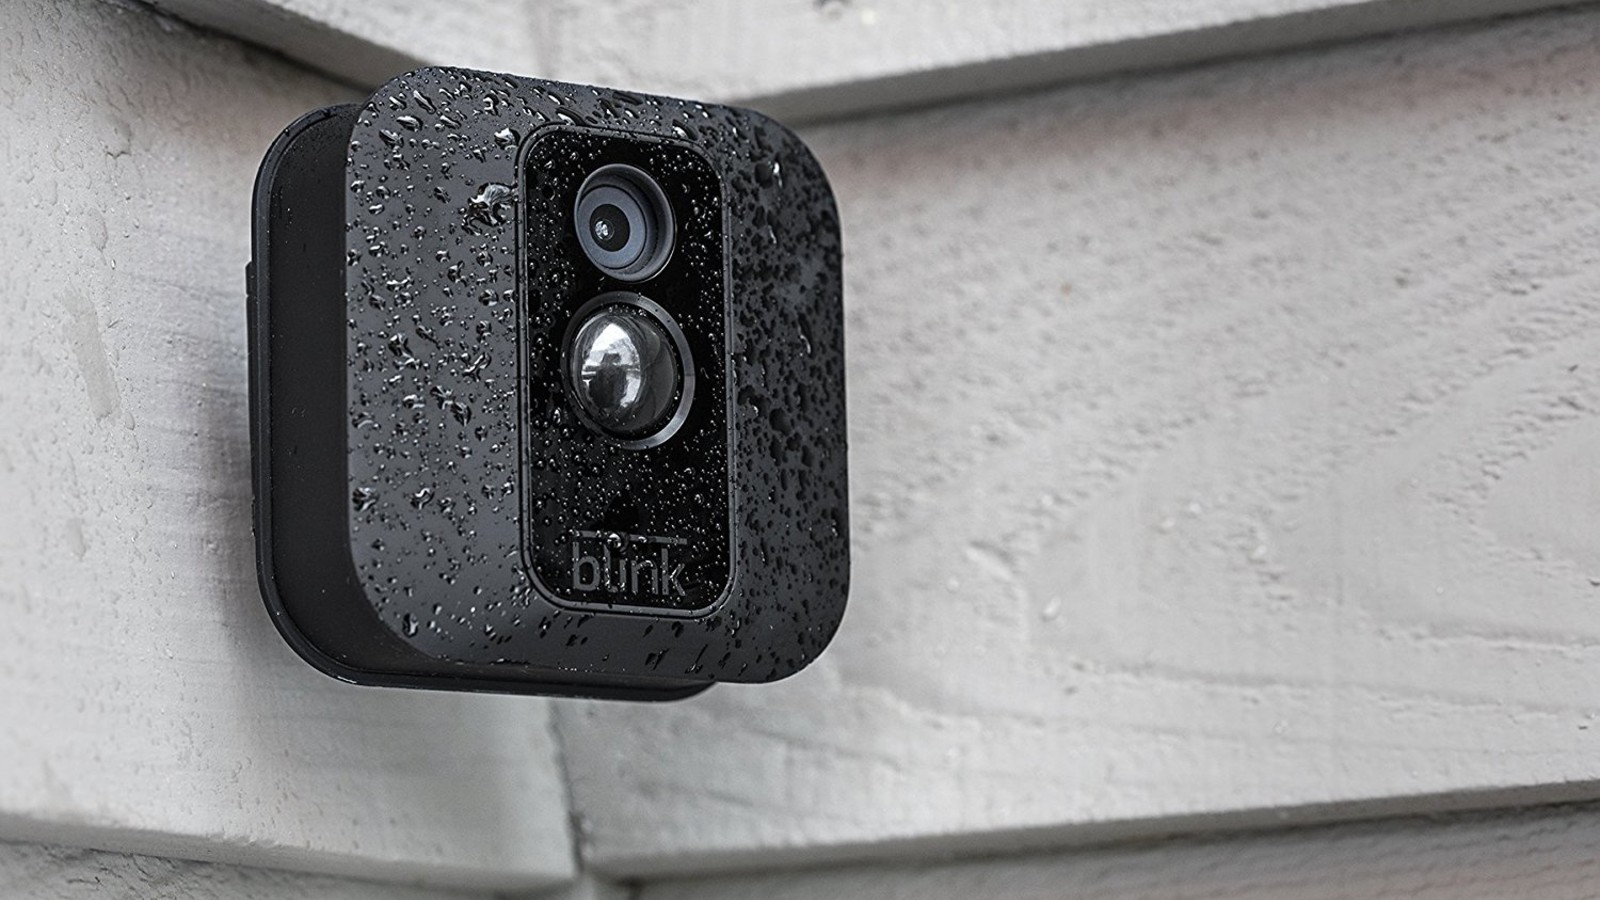 Amazon Blink Outdoor dipasang di dinding